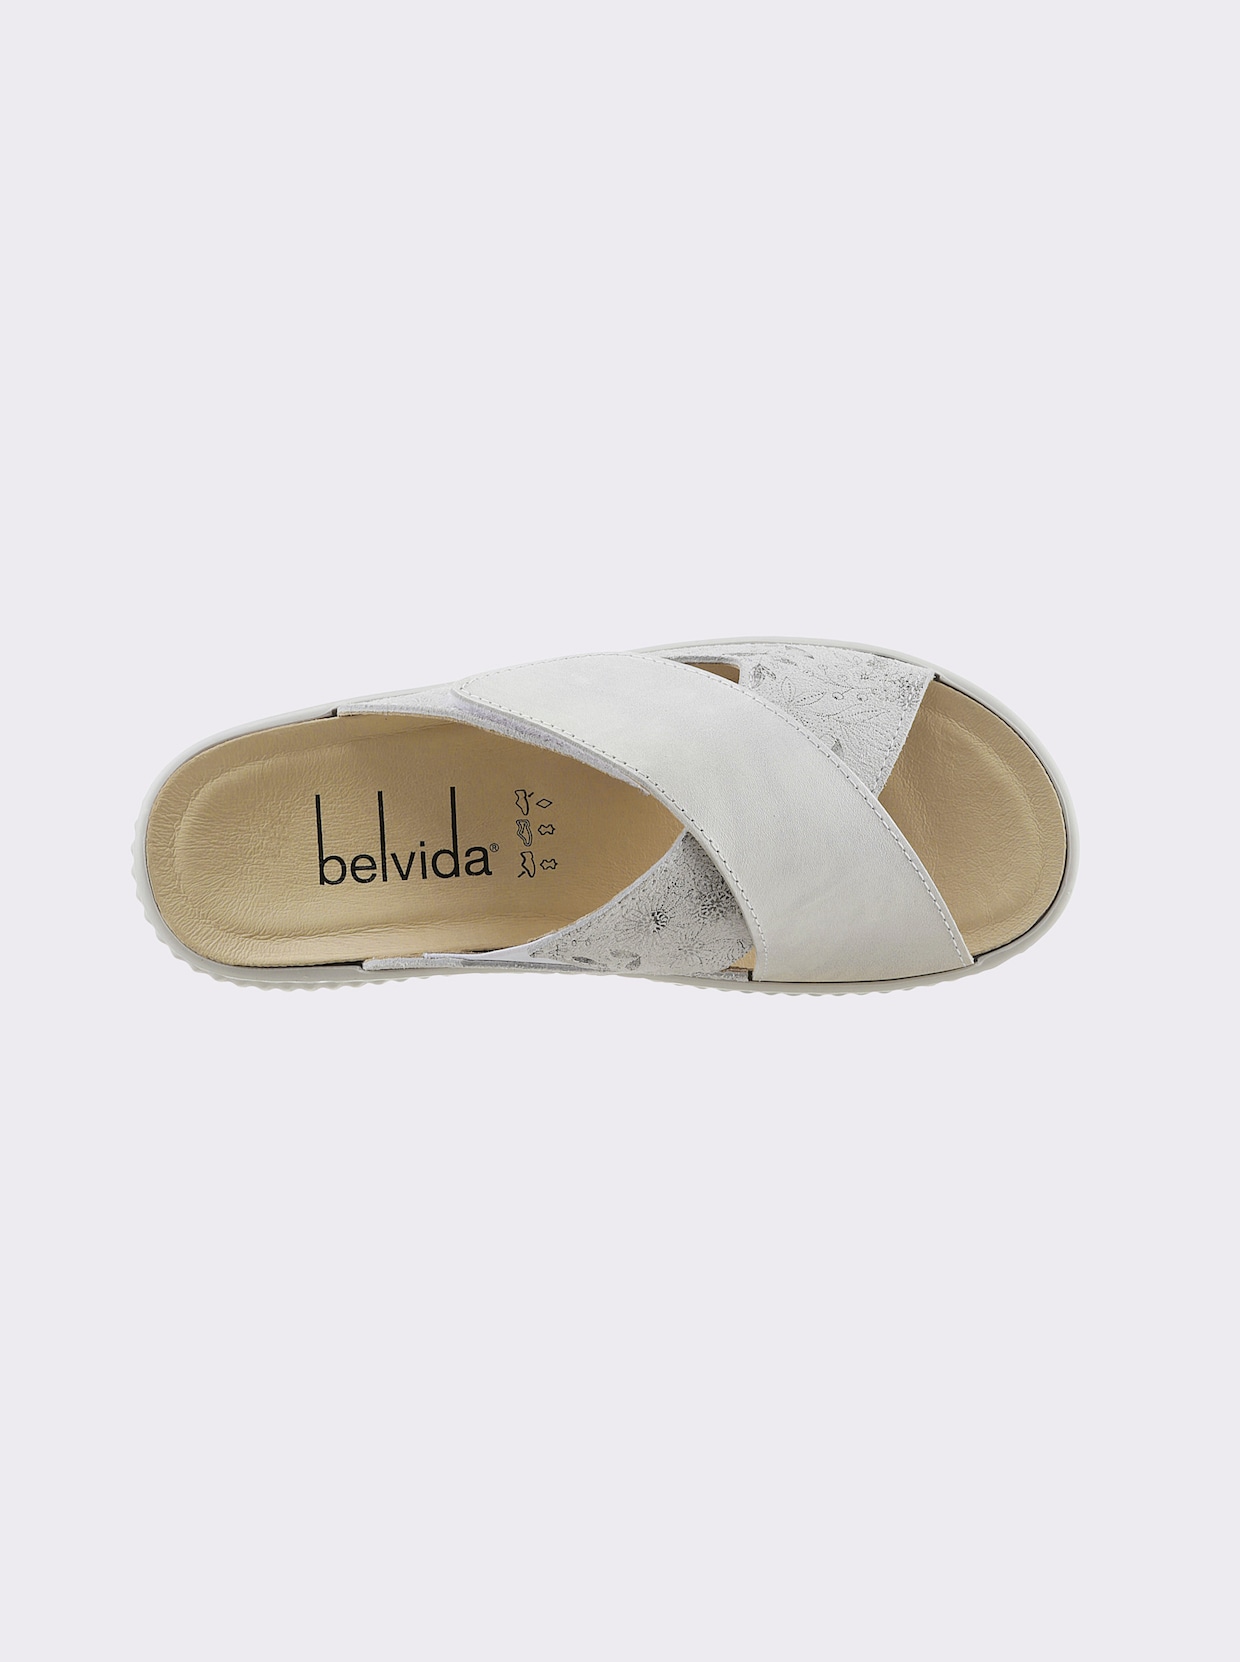 Belvida Pantolette - weiß-gemustert